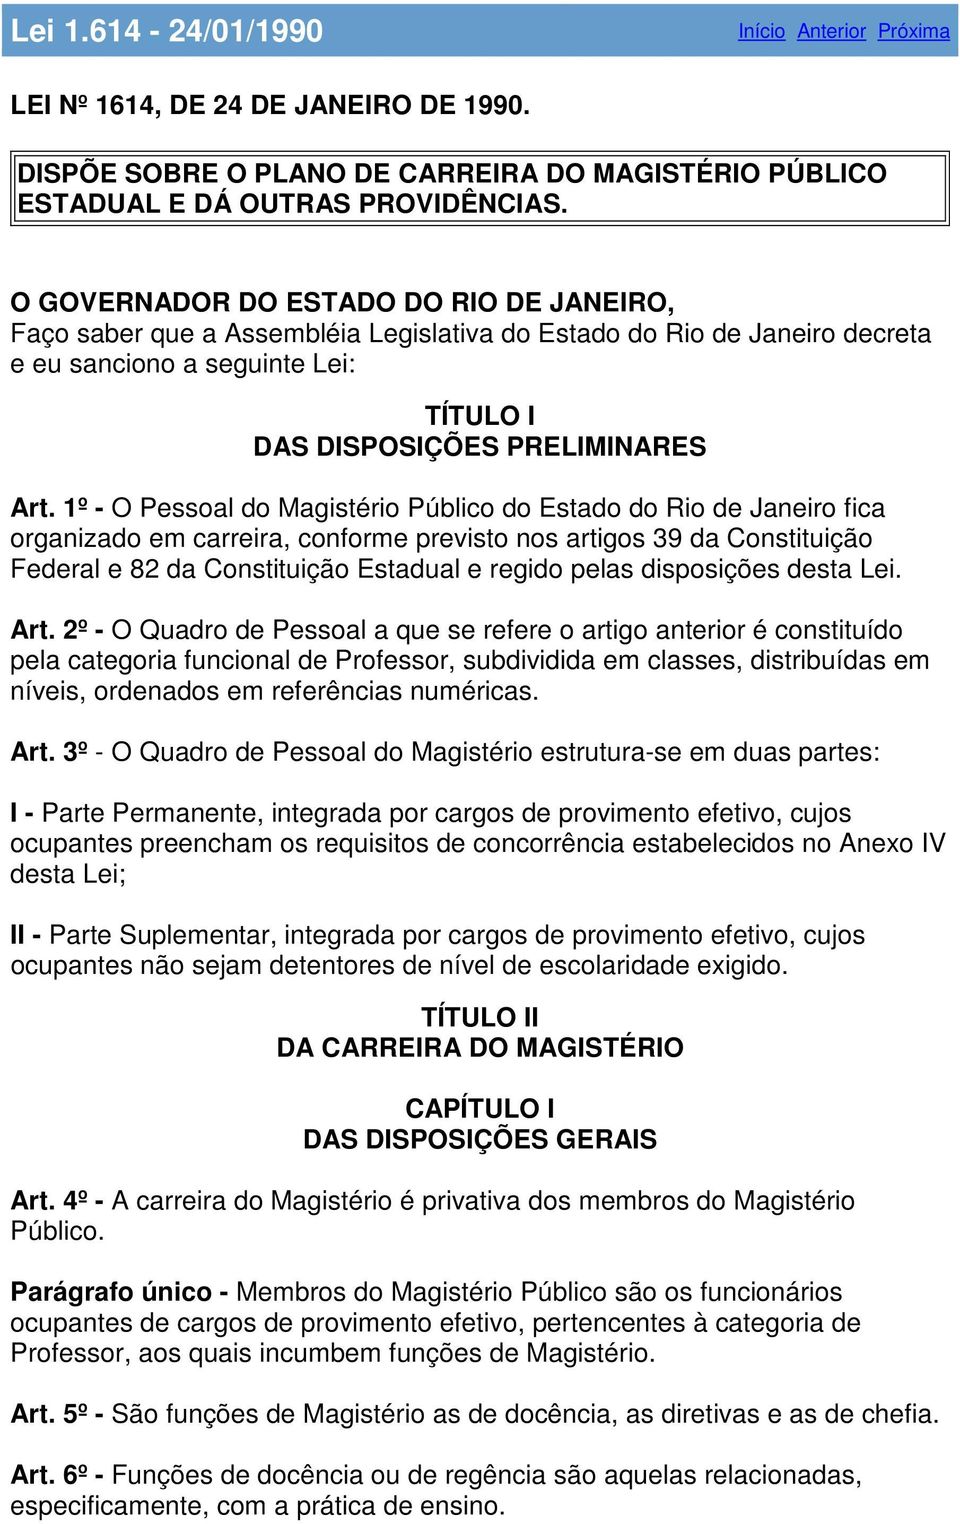 1º - O Pessoal do Magistério Público do Estado do Rio de Janeiro fica organizado em carreira, conforme previsto nos artigos 39 da Constituição Federal e 82 da Constituição Estadual e regido pelas